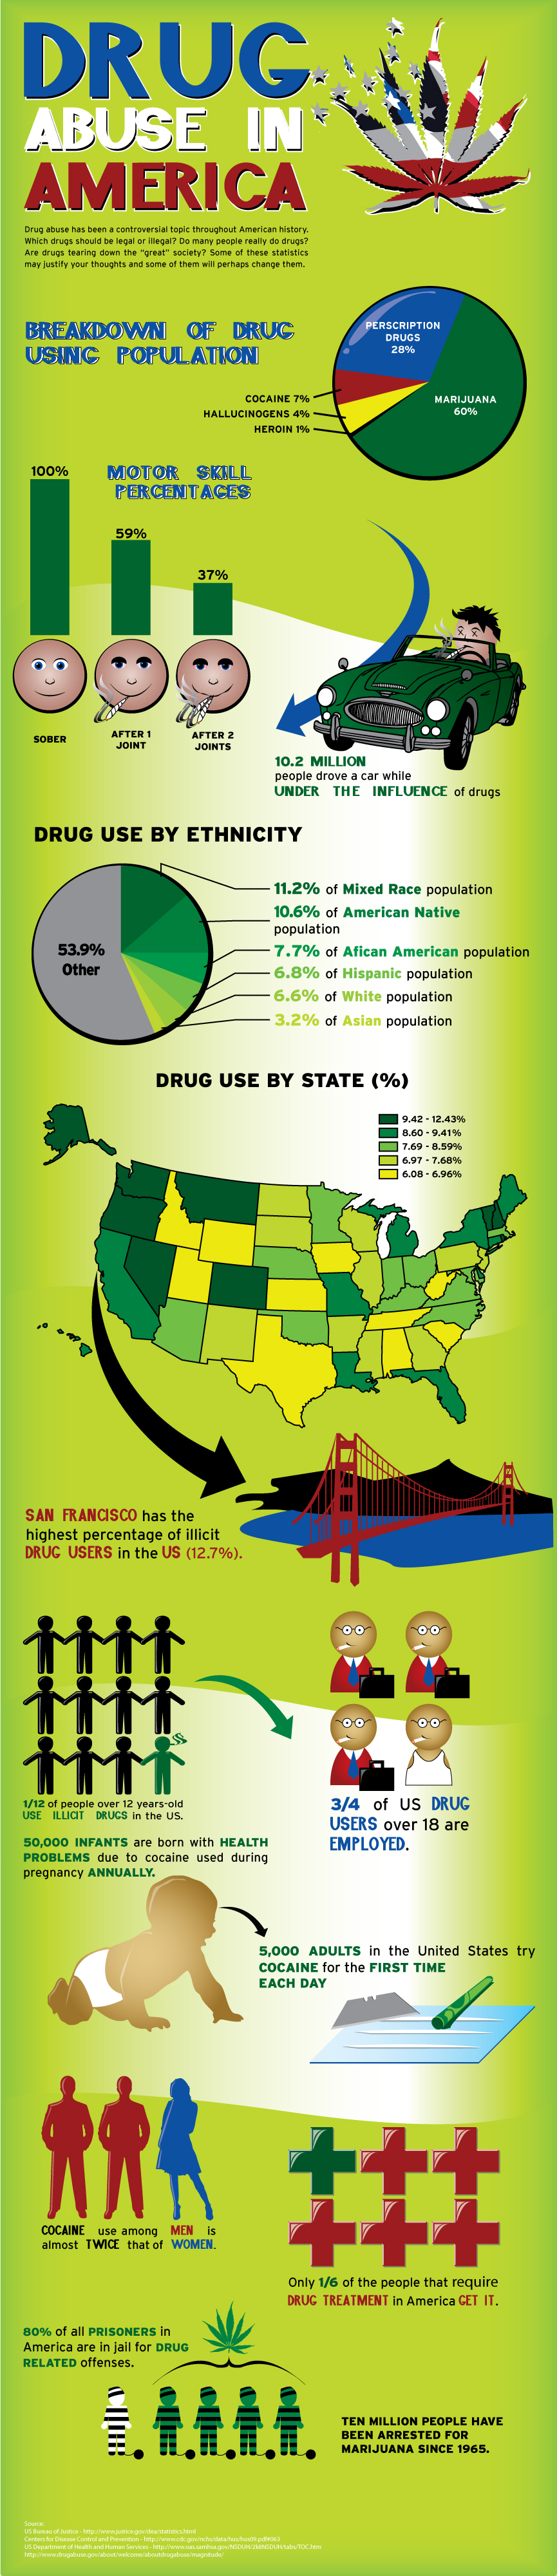 מידע על השימוש בסמים בארצות הברית